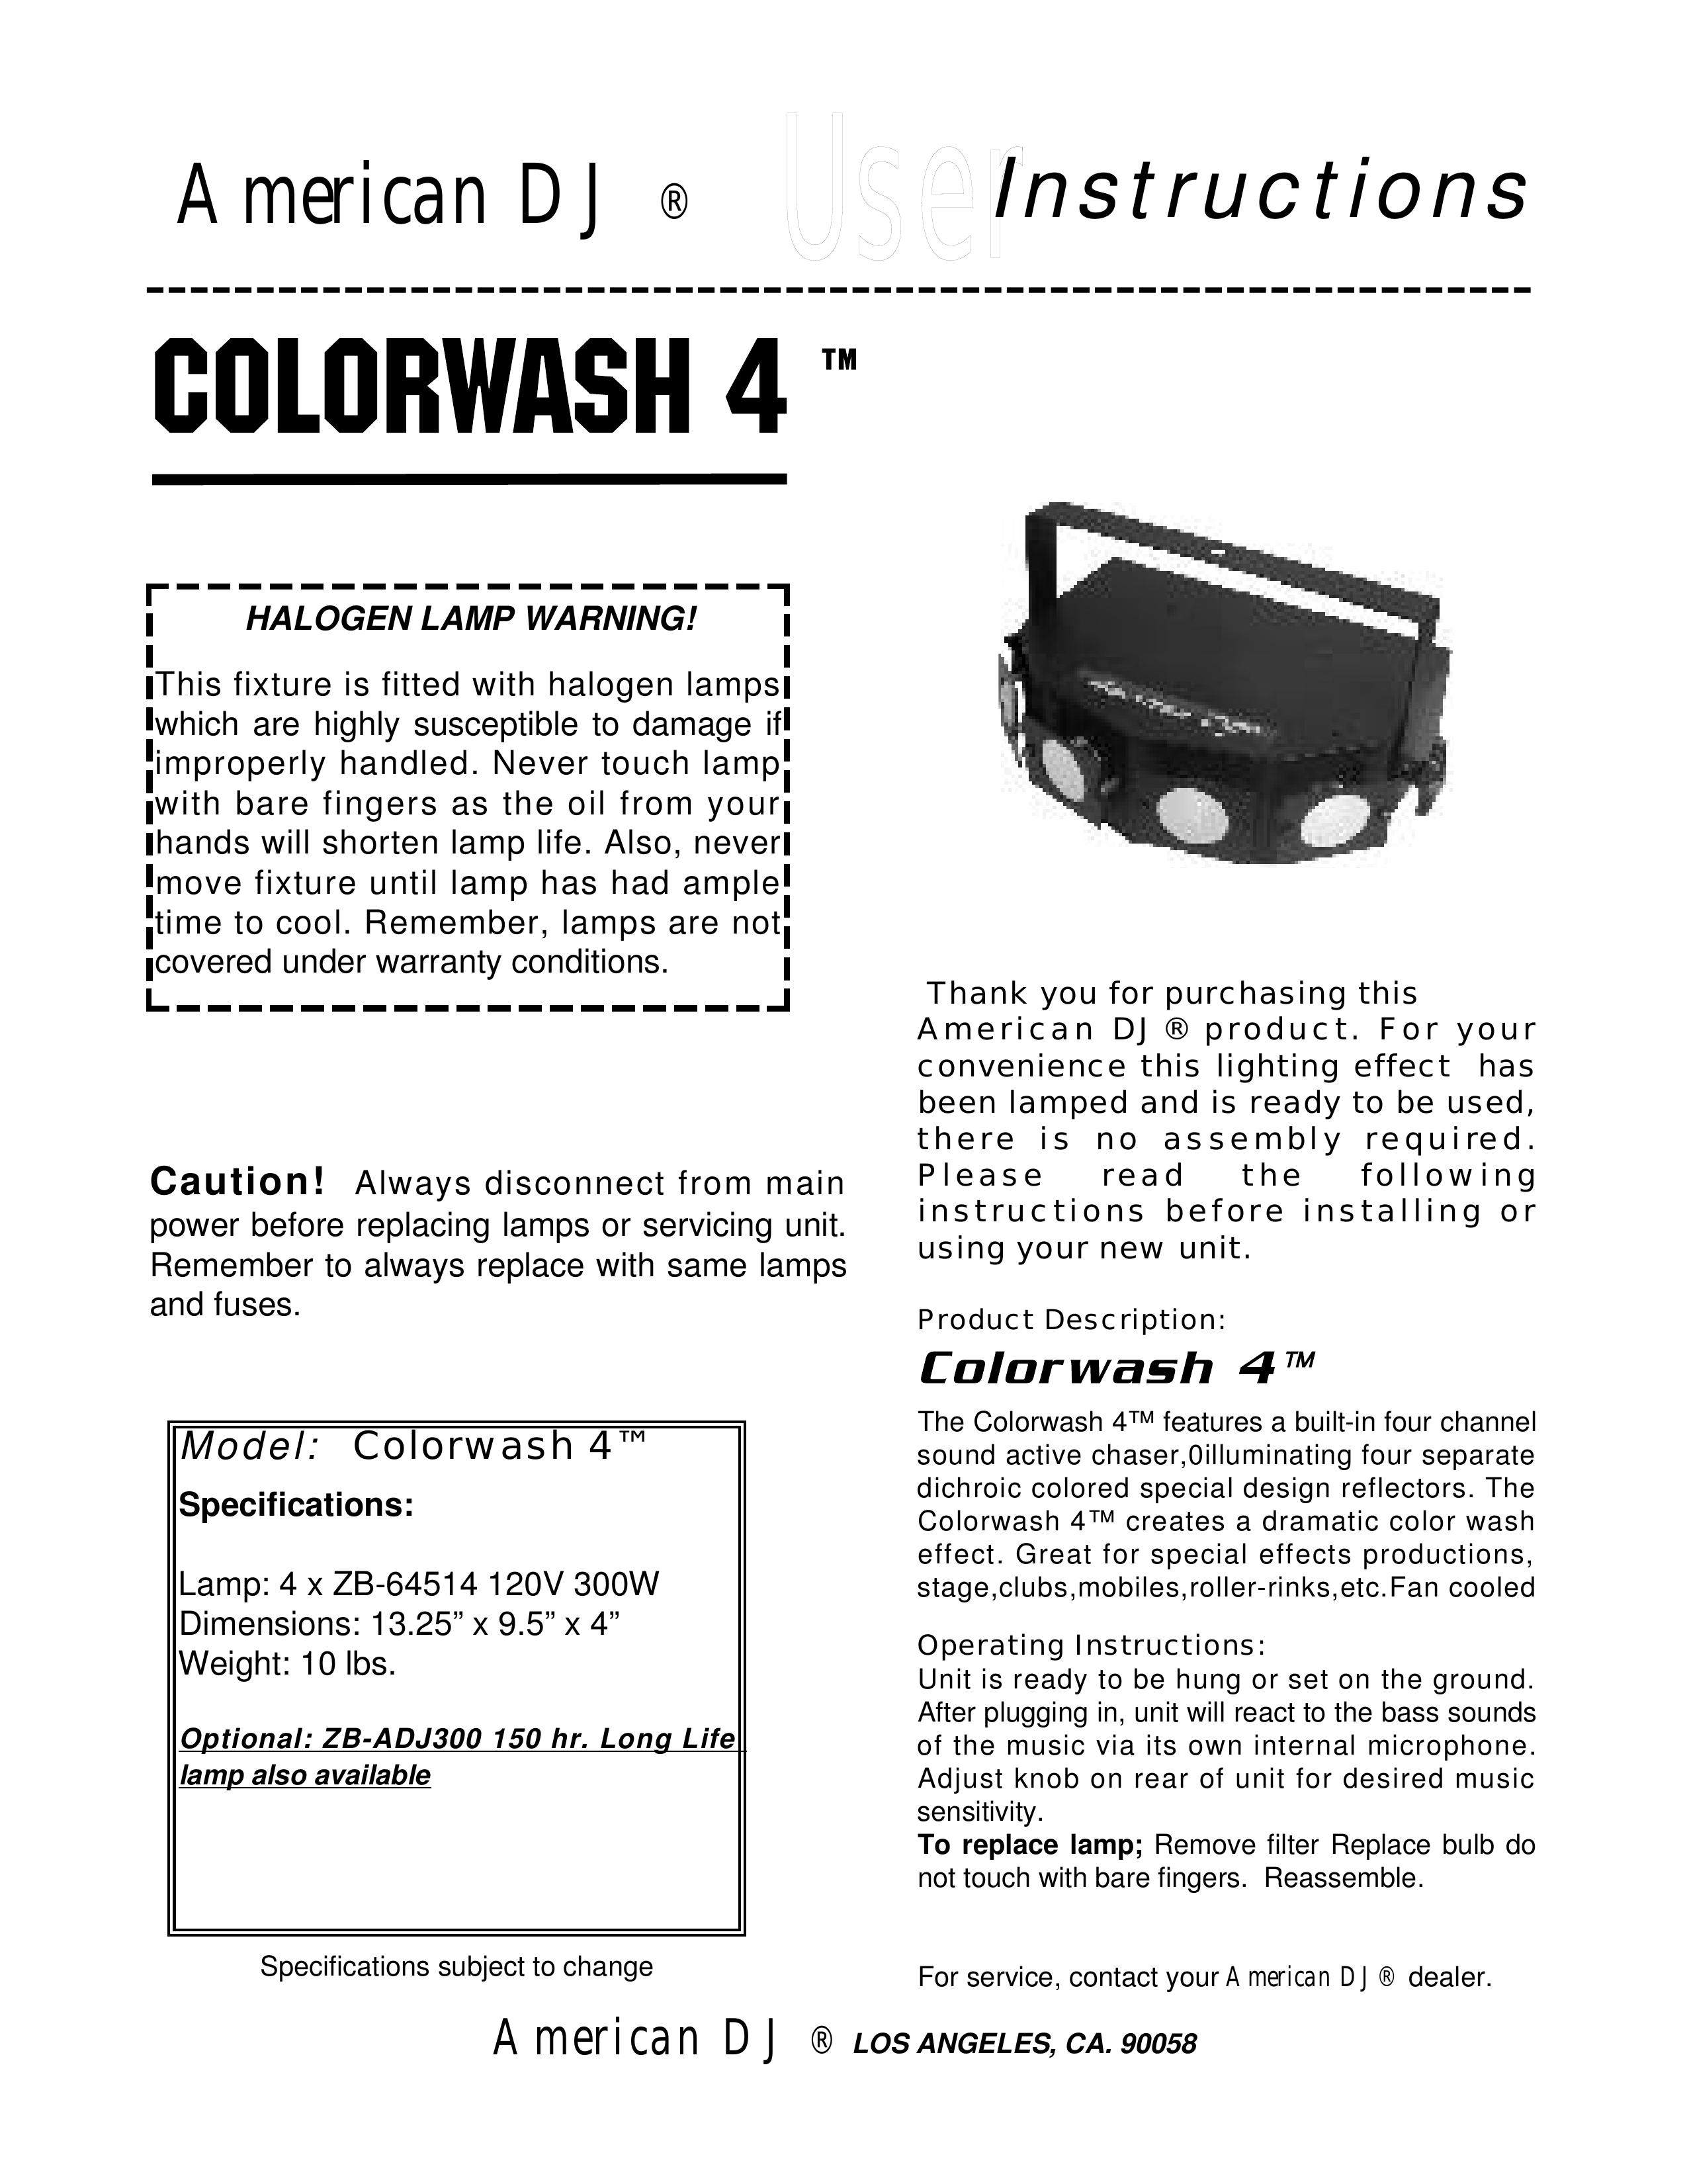 American DJ Colorwash 4 DJ Equipment User Manual